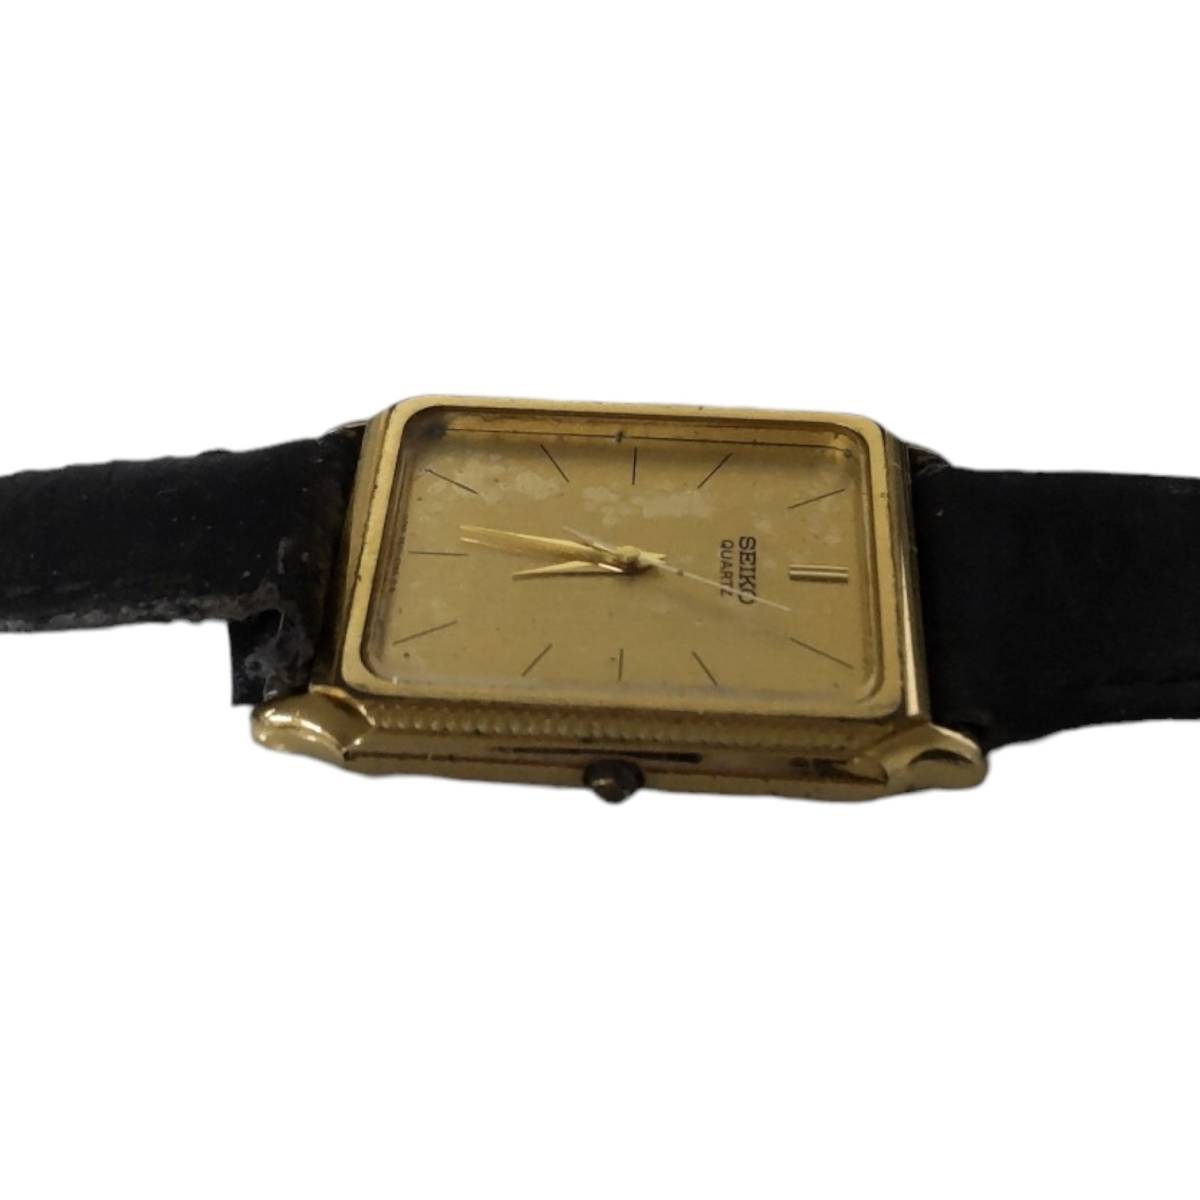 【中古品】SEIKO セイコー 9521-5040 文字盤ゴールド ベルト社外品 クオーツ メンズ腕時計 箱無し 本体のみ hiL2-411RO_画像2